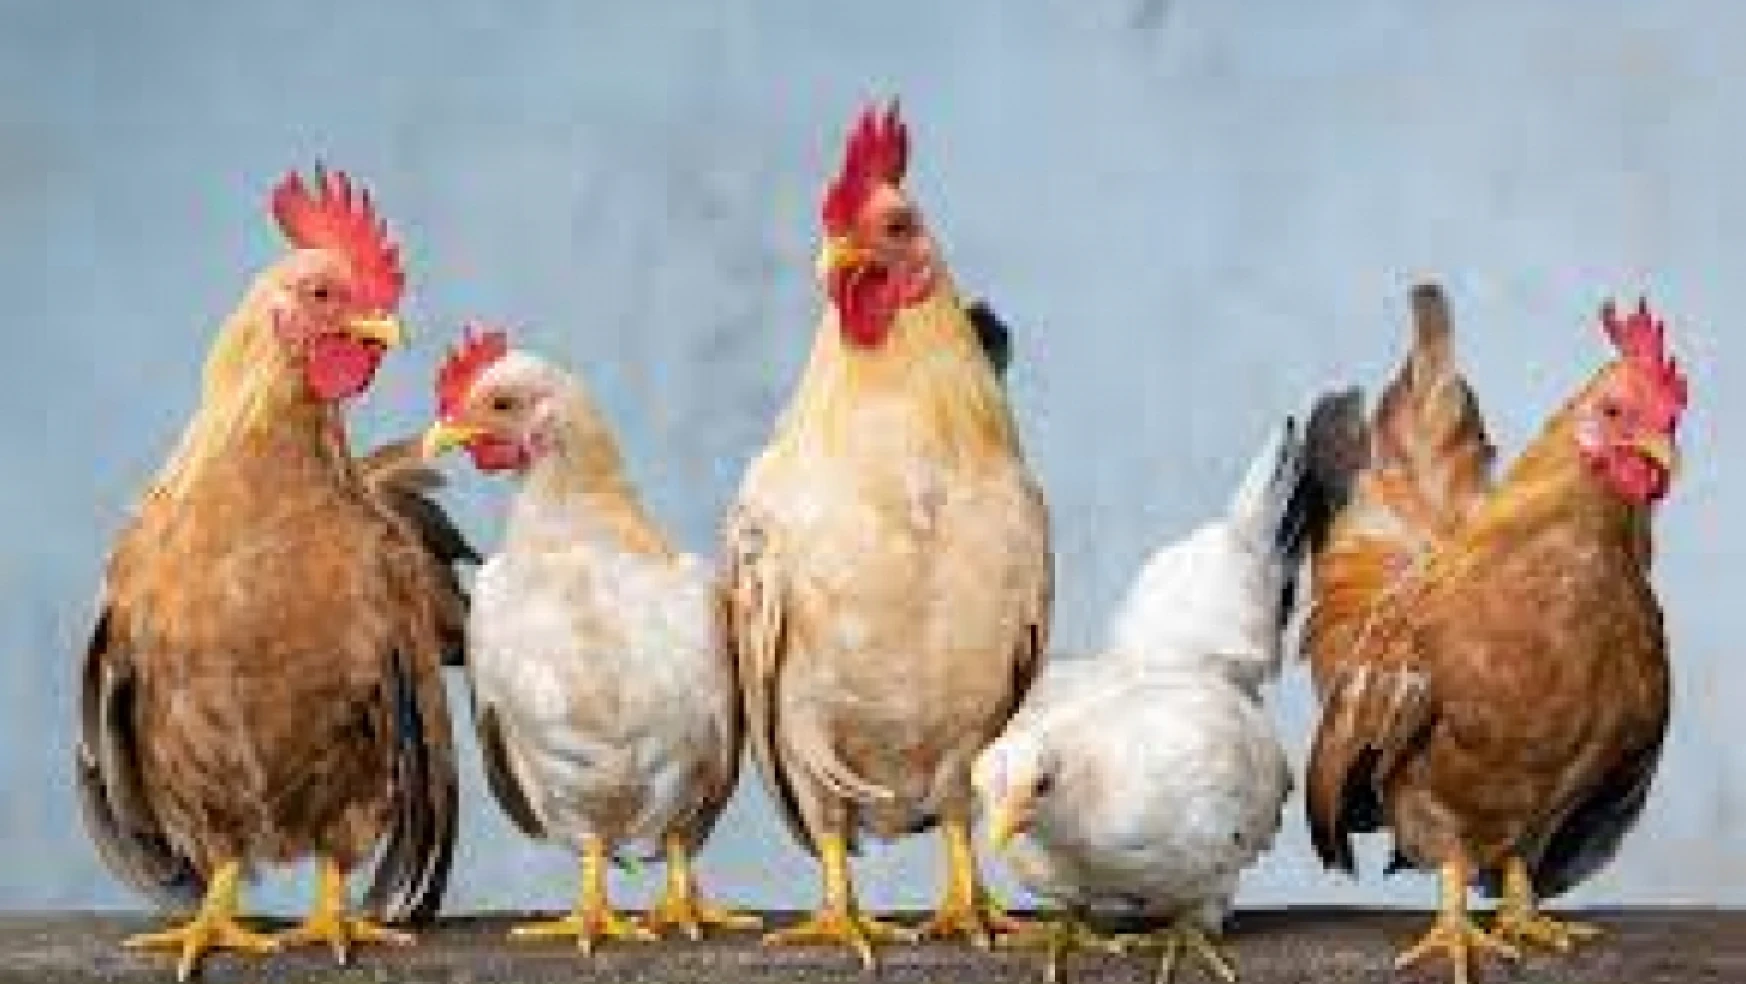 Tavuk eti üretimi 194 bin 912 ton, tavuk yumurtası üretimi 1,68 milyar adet olarak gerçekleşti